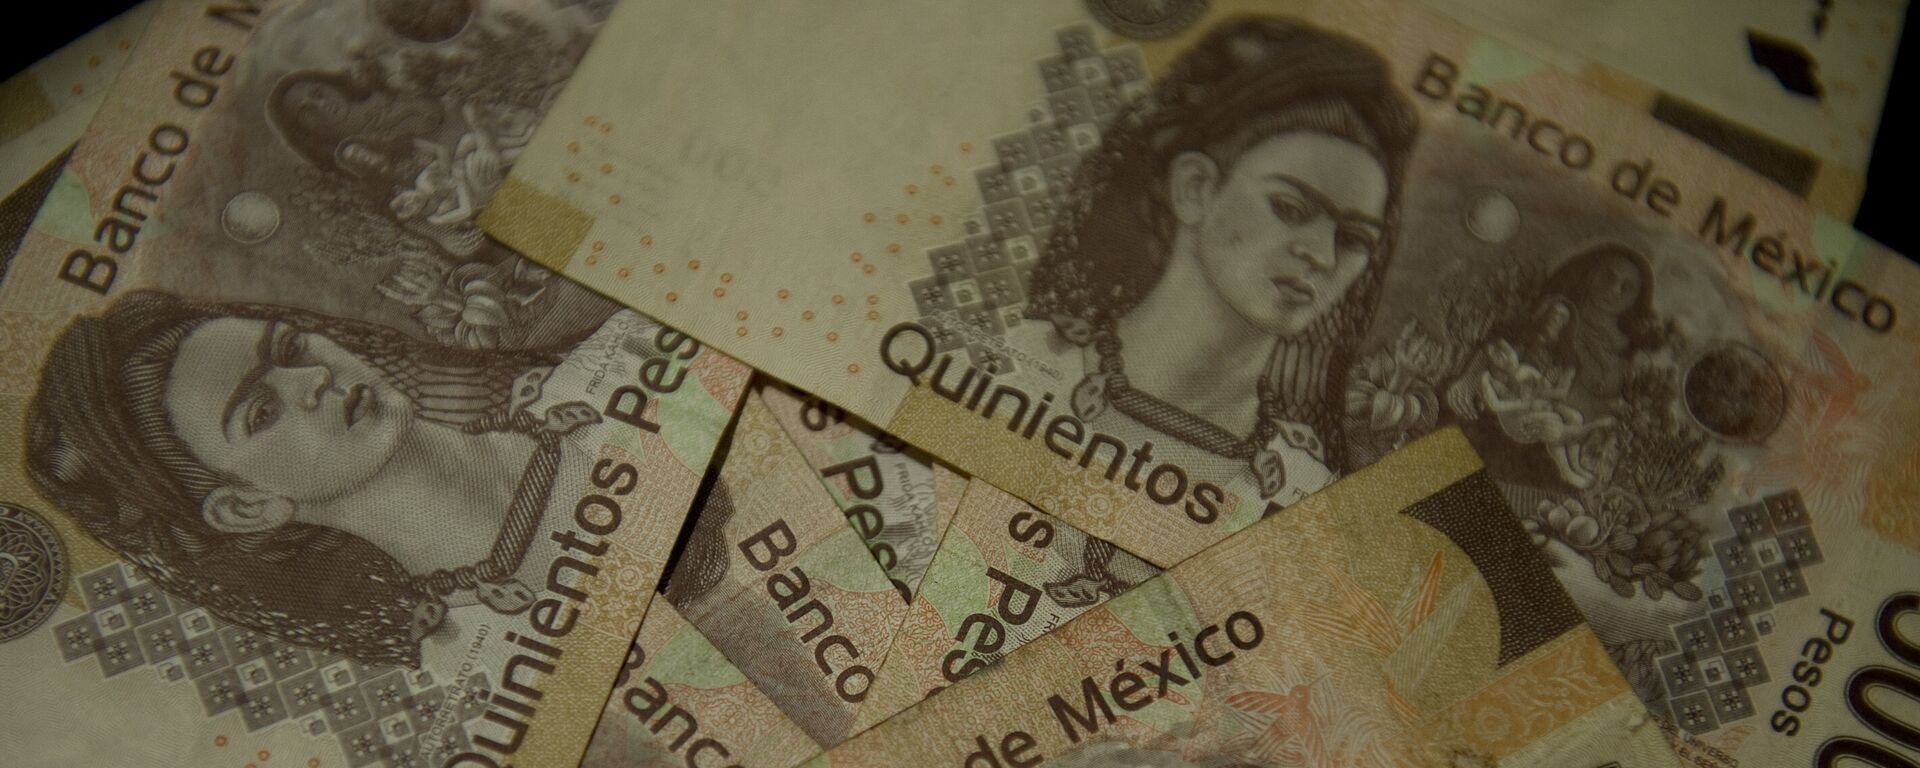 Pesos mexicanos (imagen referencial) - Sputnik Mundo, 1920, 09.11.2020